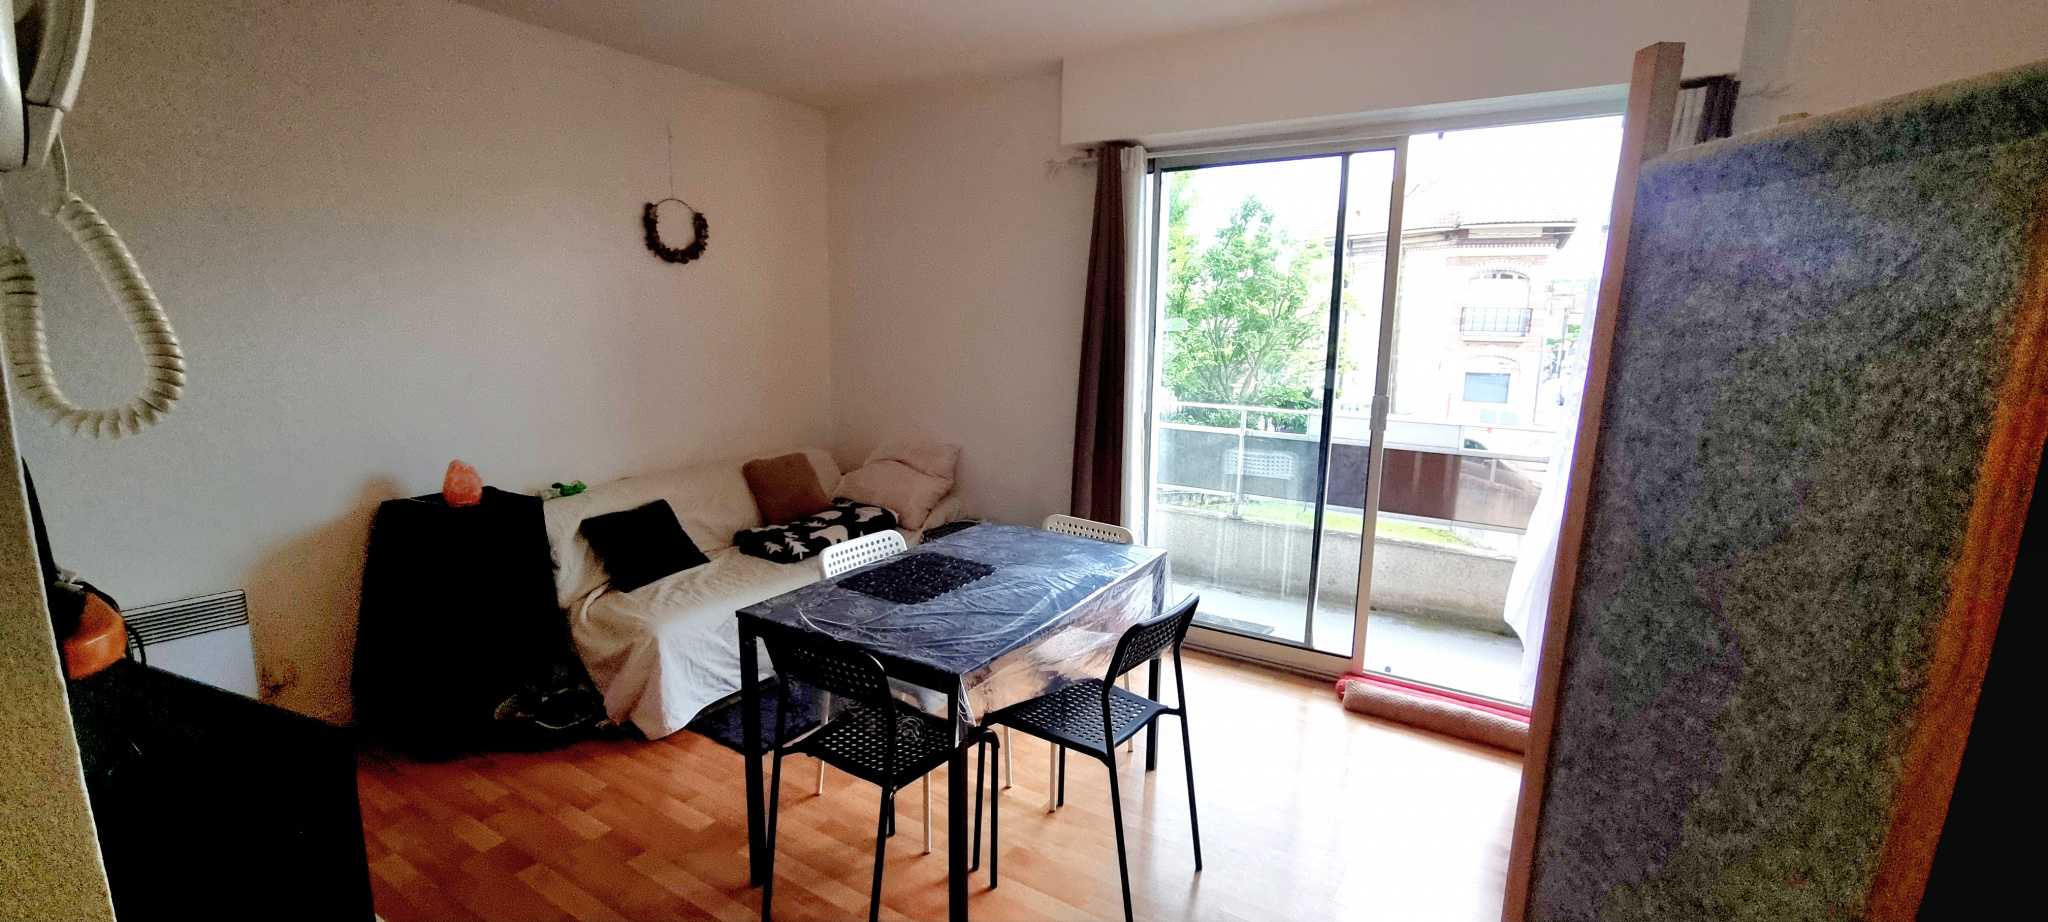 Appartement 1 pièce - 25m² - TREMBLAY EN FRANCE